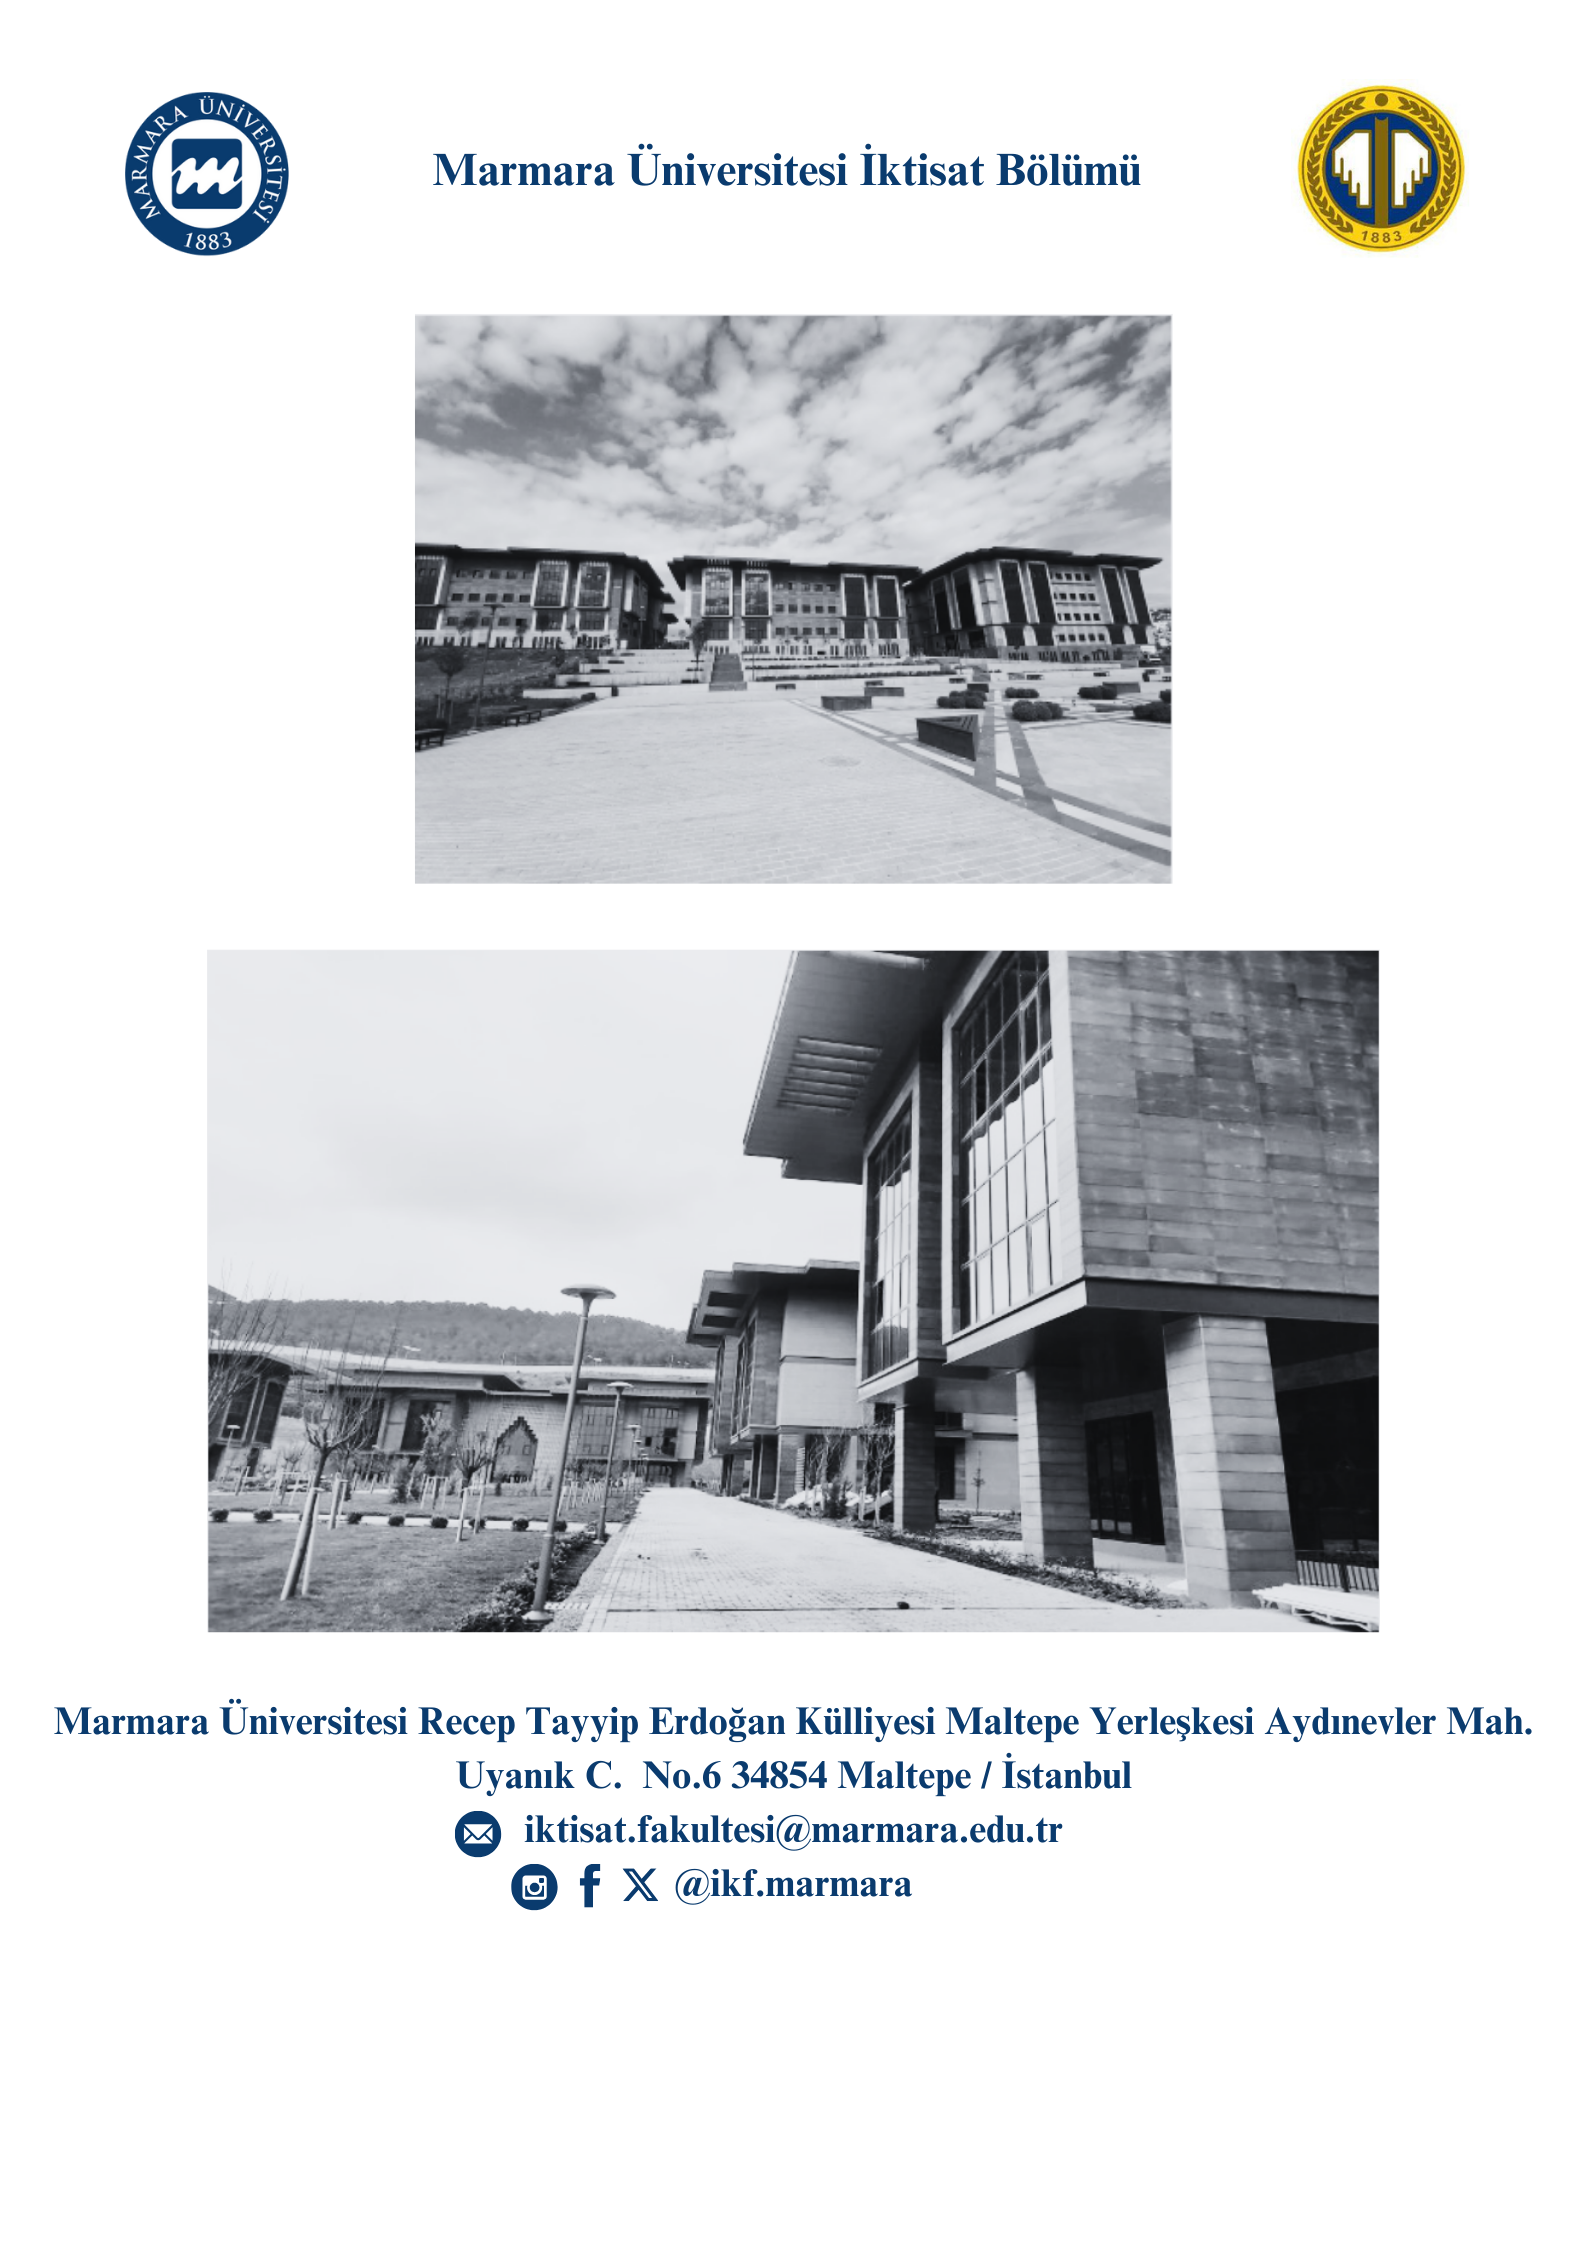 Marmara Üniversitesi İktisat Bölümü.png (1.54 MB)